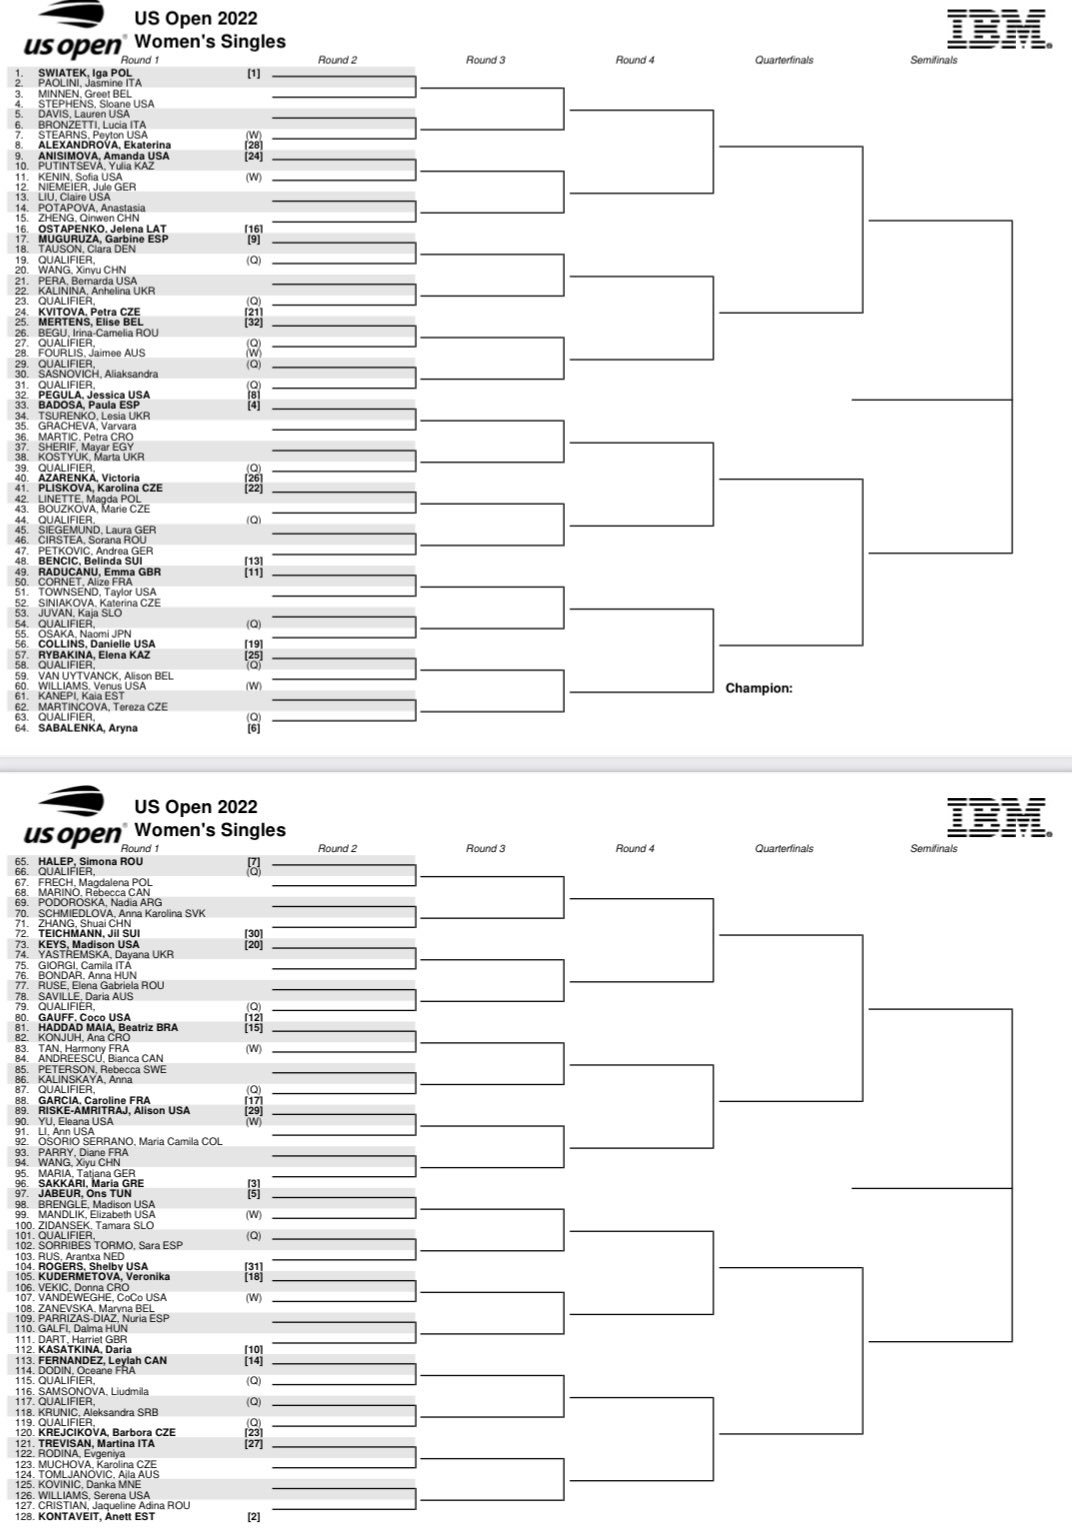 Cuadro femenino US Open 2022: cruces y enfrentamientos de Badosa, Muguruza...